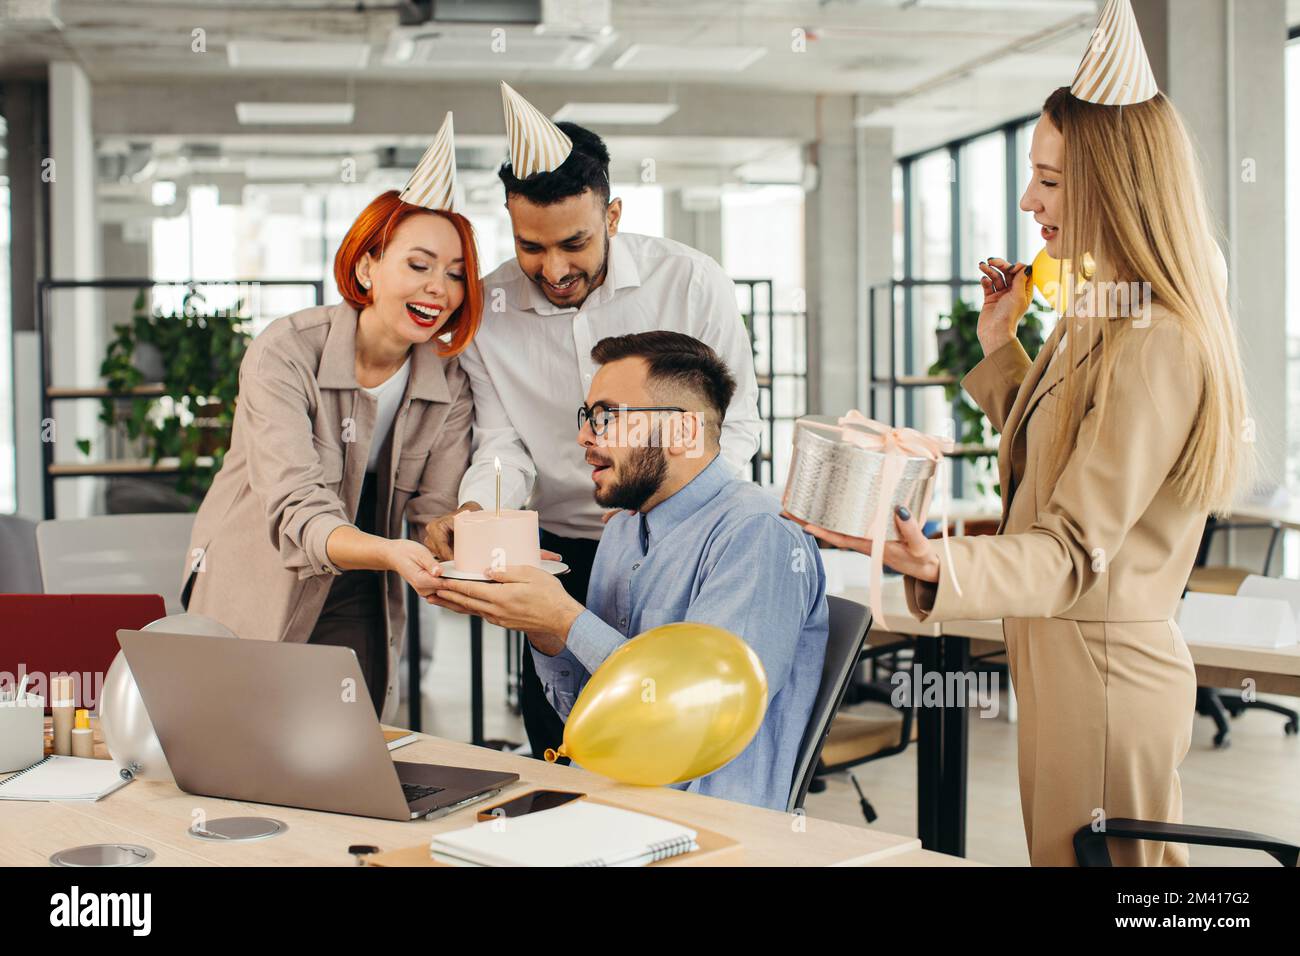 Ein glücklicher Geschäftsmann bläst eine Kerze auf dem Kuchen aus, während er mit weiblichen Kollegen im Büro Geburtstag feiert. Stockfoto